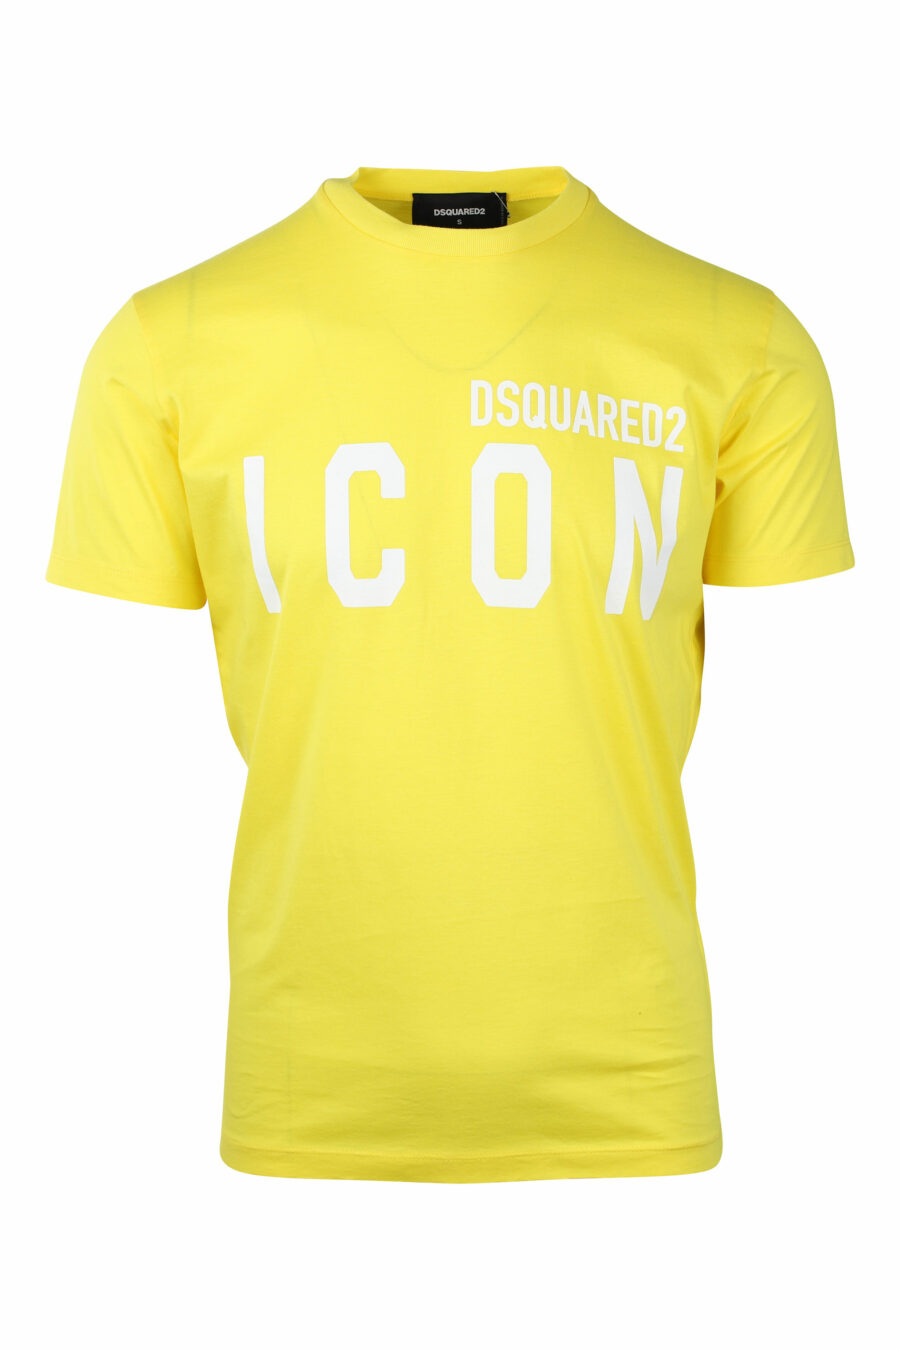 T-shirt amarela com o logótipo "ícone" duplo branco - IMG 1404